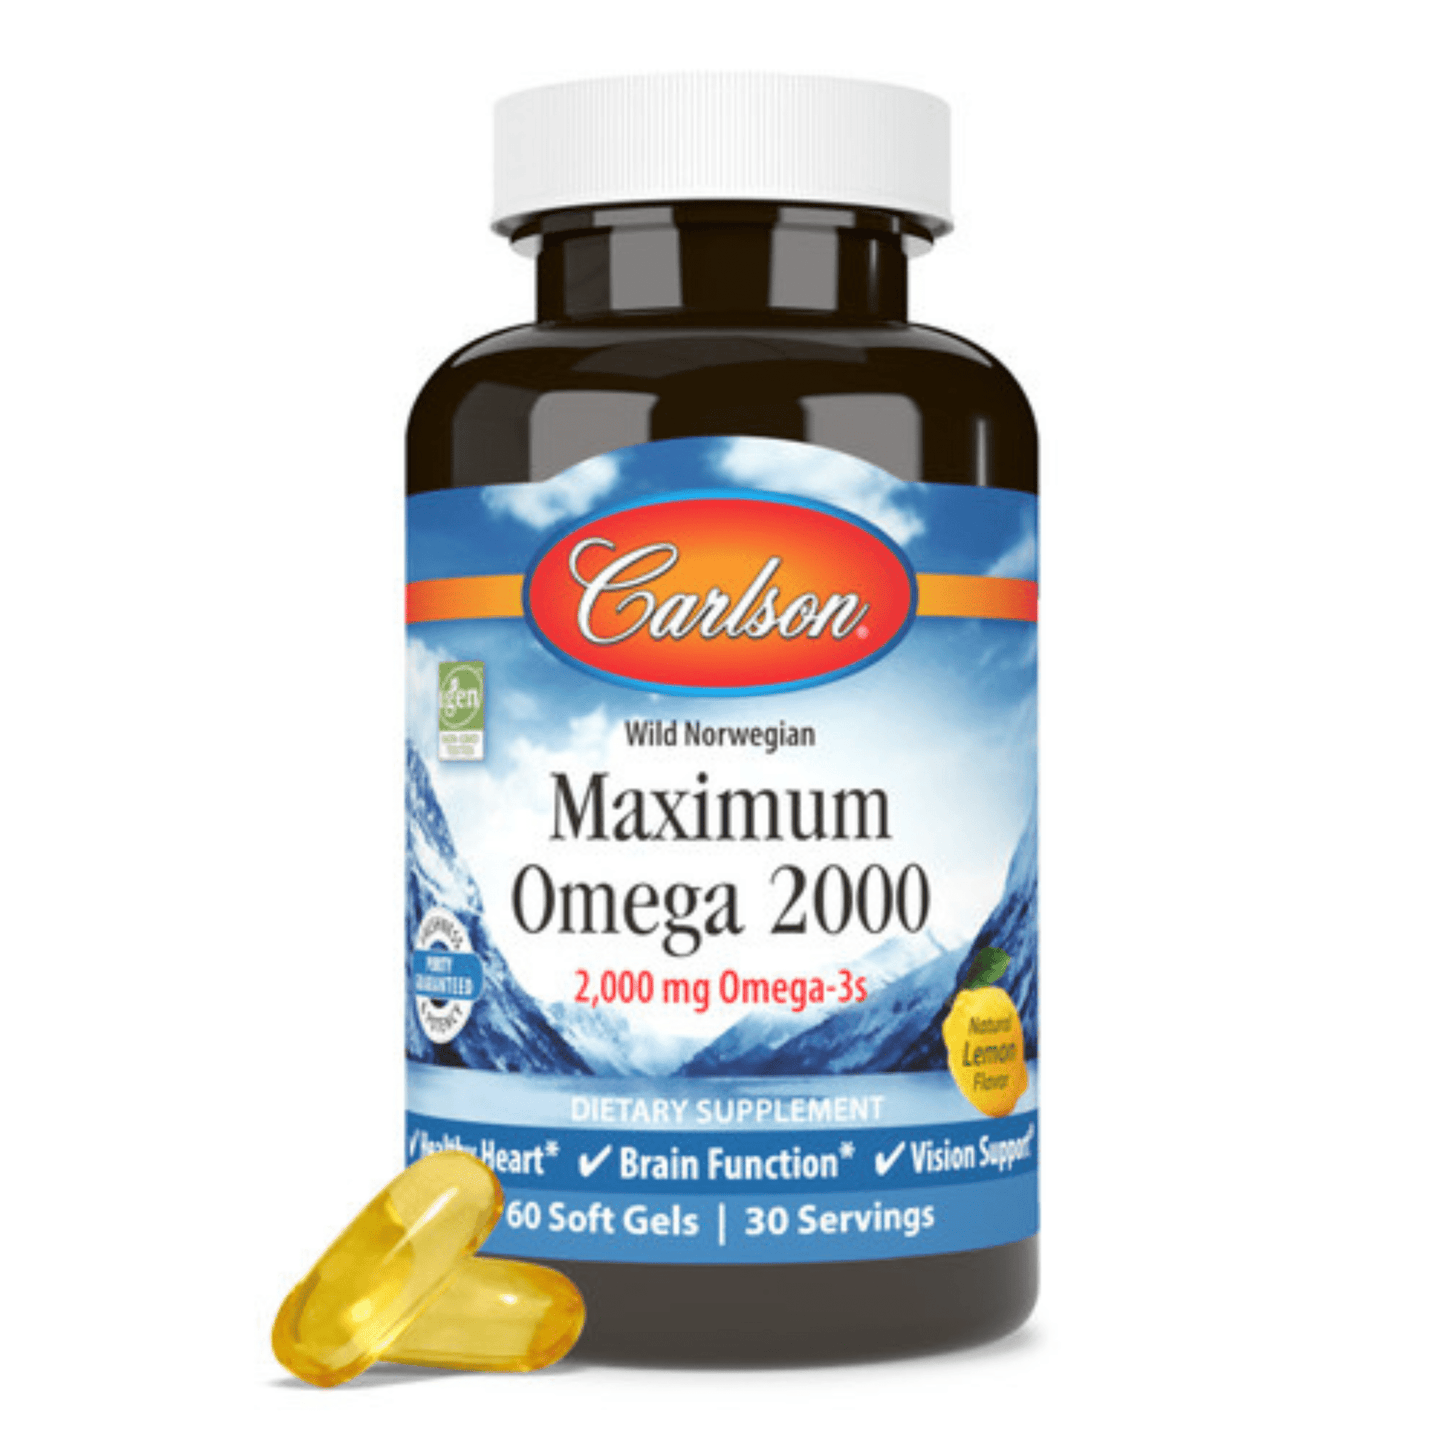 Primary Image of Maximum Omega 2000 Soft Gels